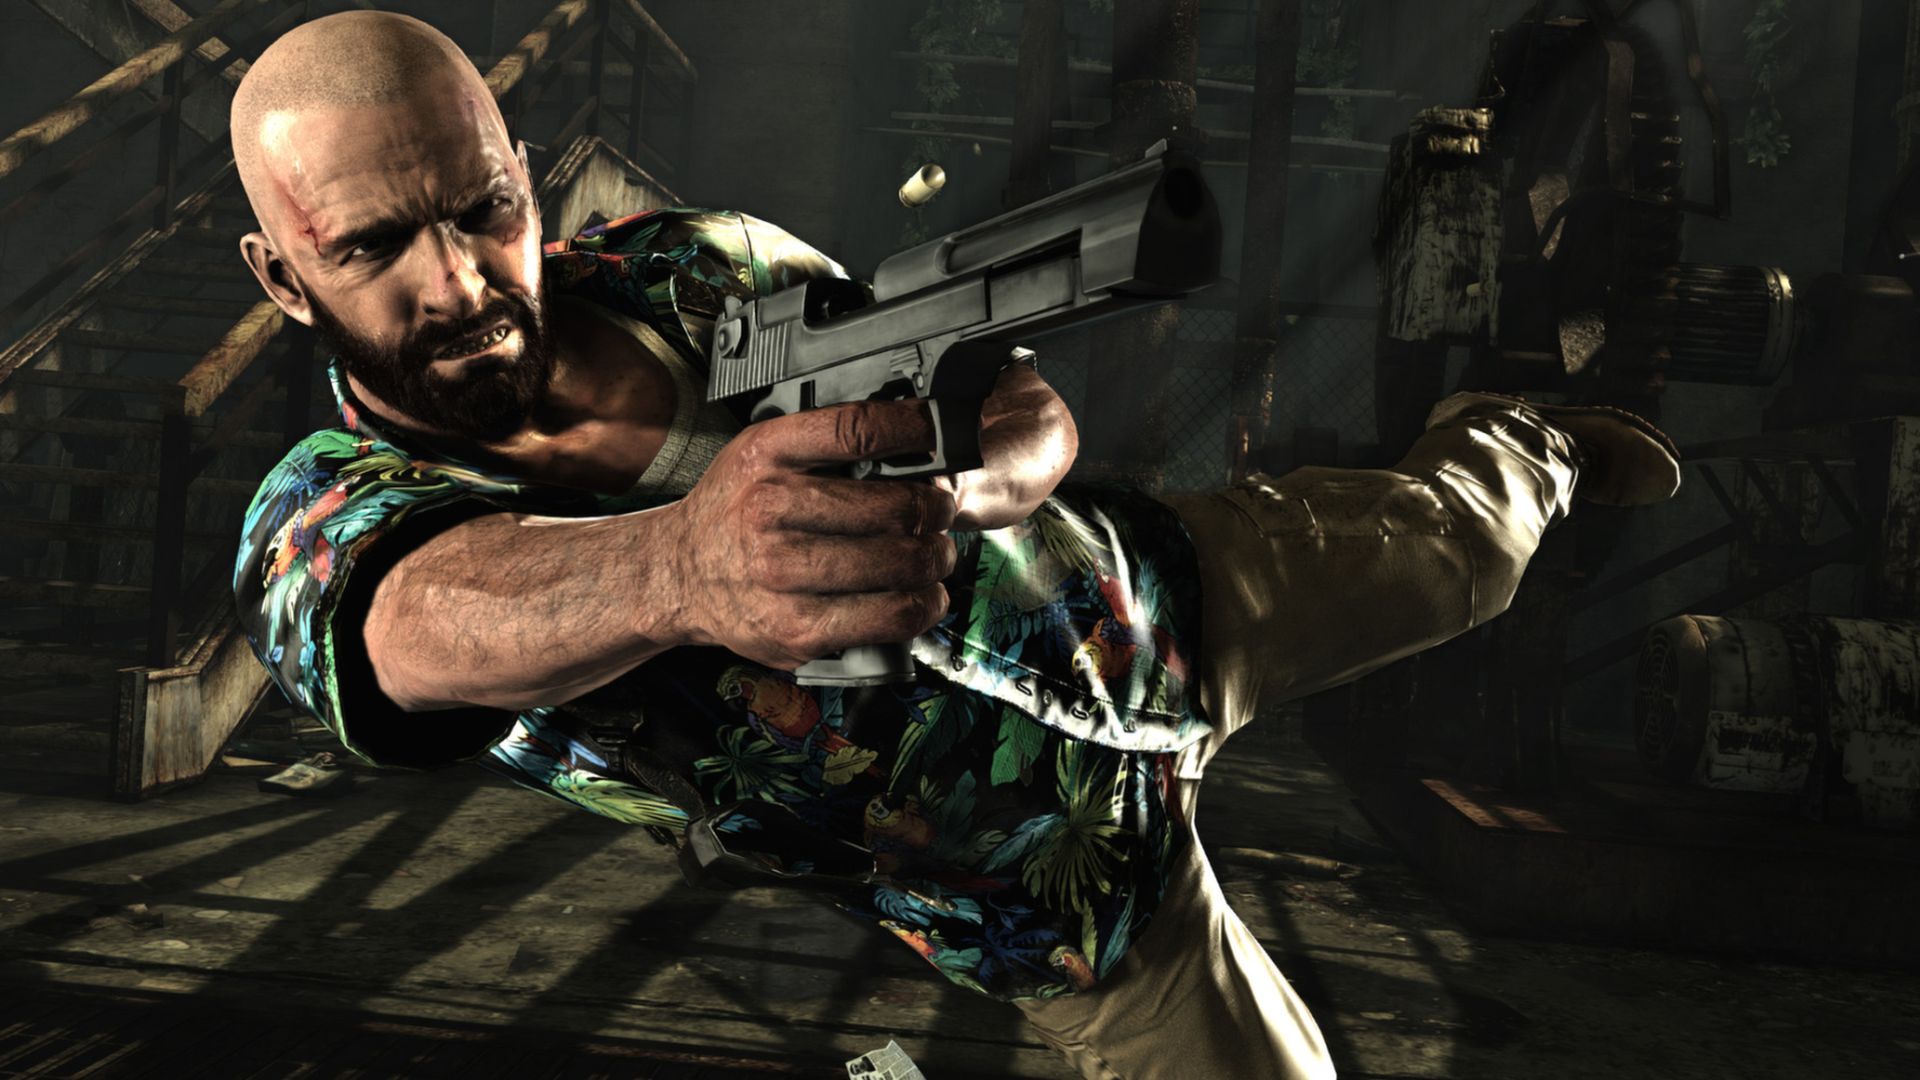 رایگان شدن DLC های Max Payne 3 و L.A. Noire روی پی سی